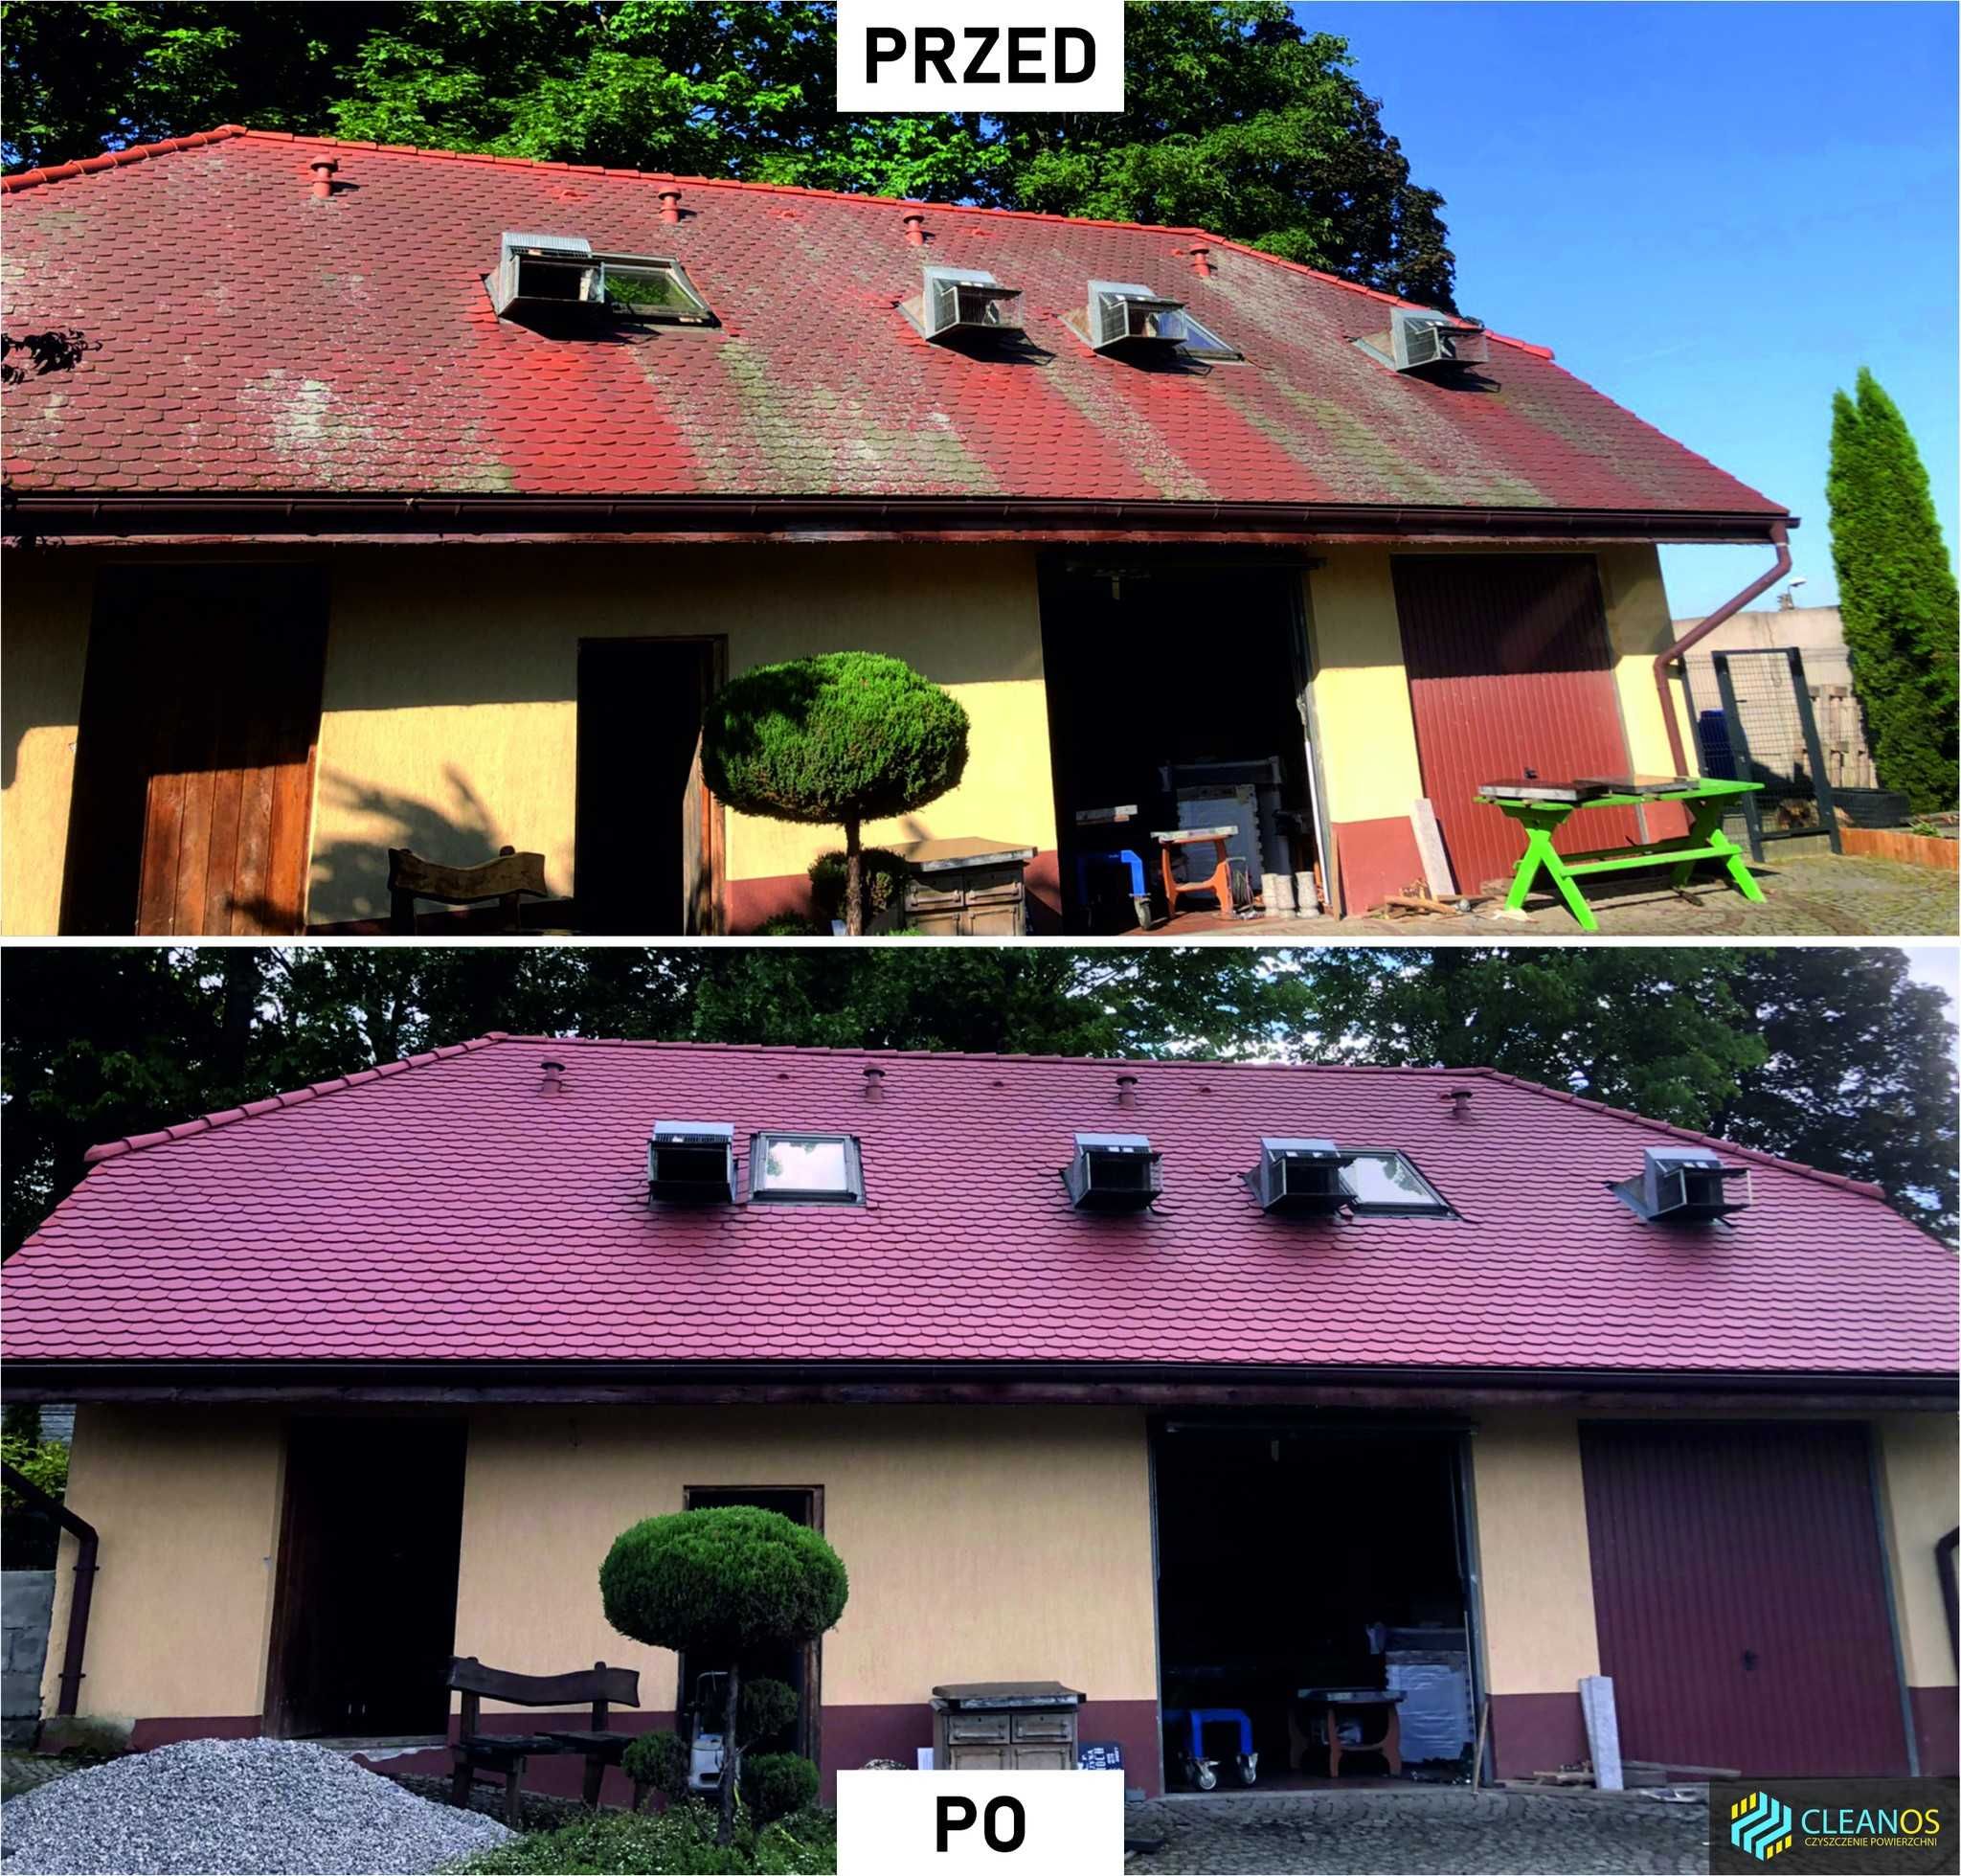 Czyszczenie domów | Mycie domów | Elewacji | Dachów | Kostki brukowej